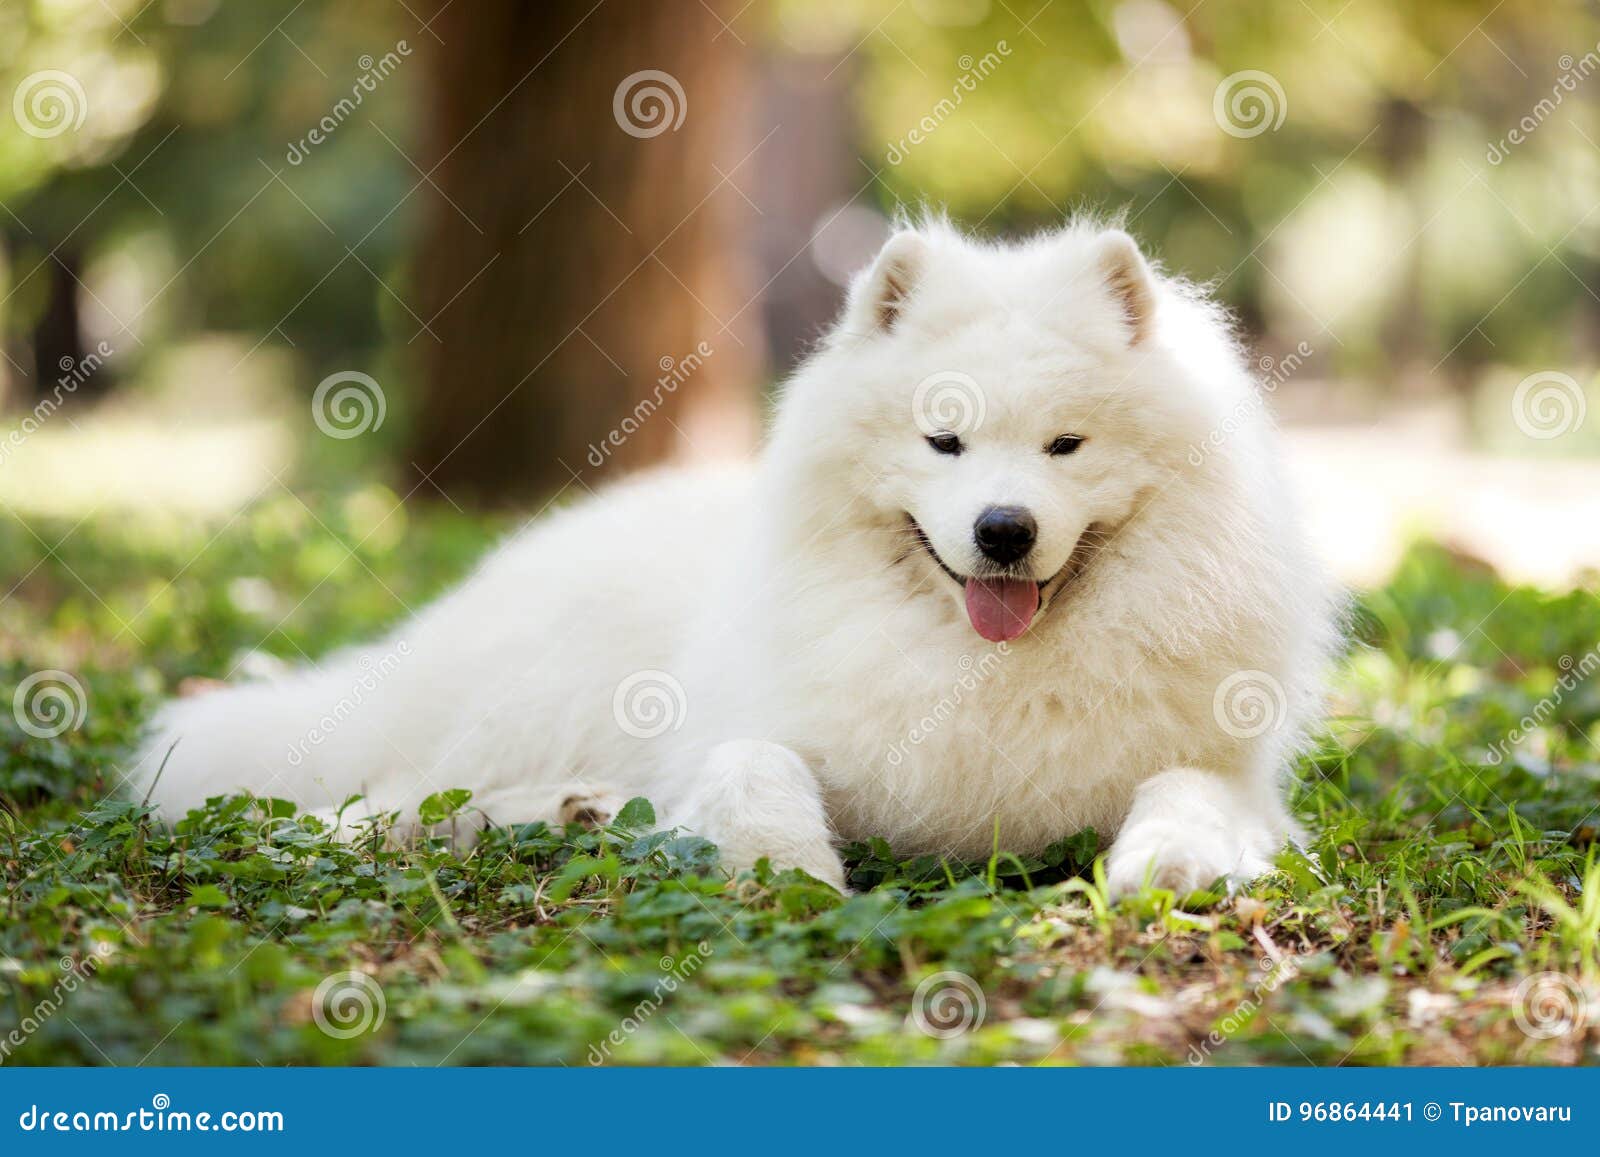 Big white samoyed dog stock image. Image of fluffy, lovely - 96864441